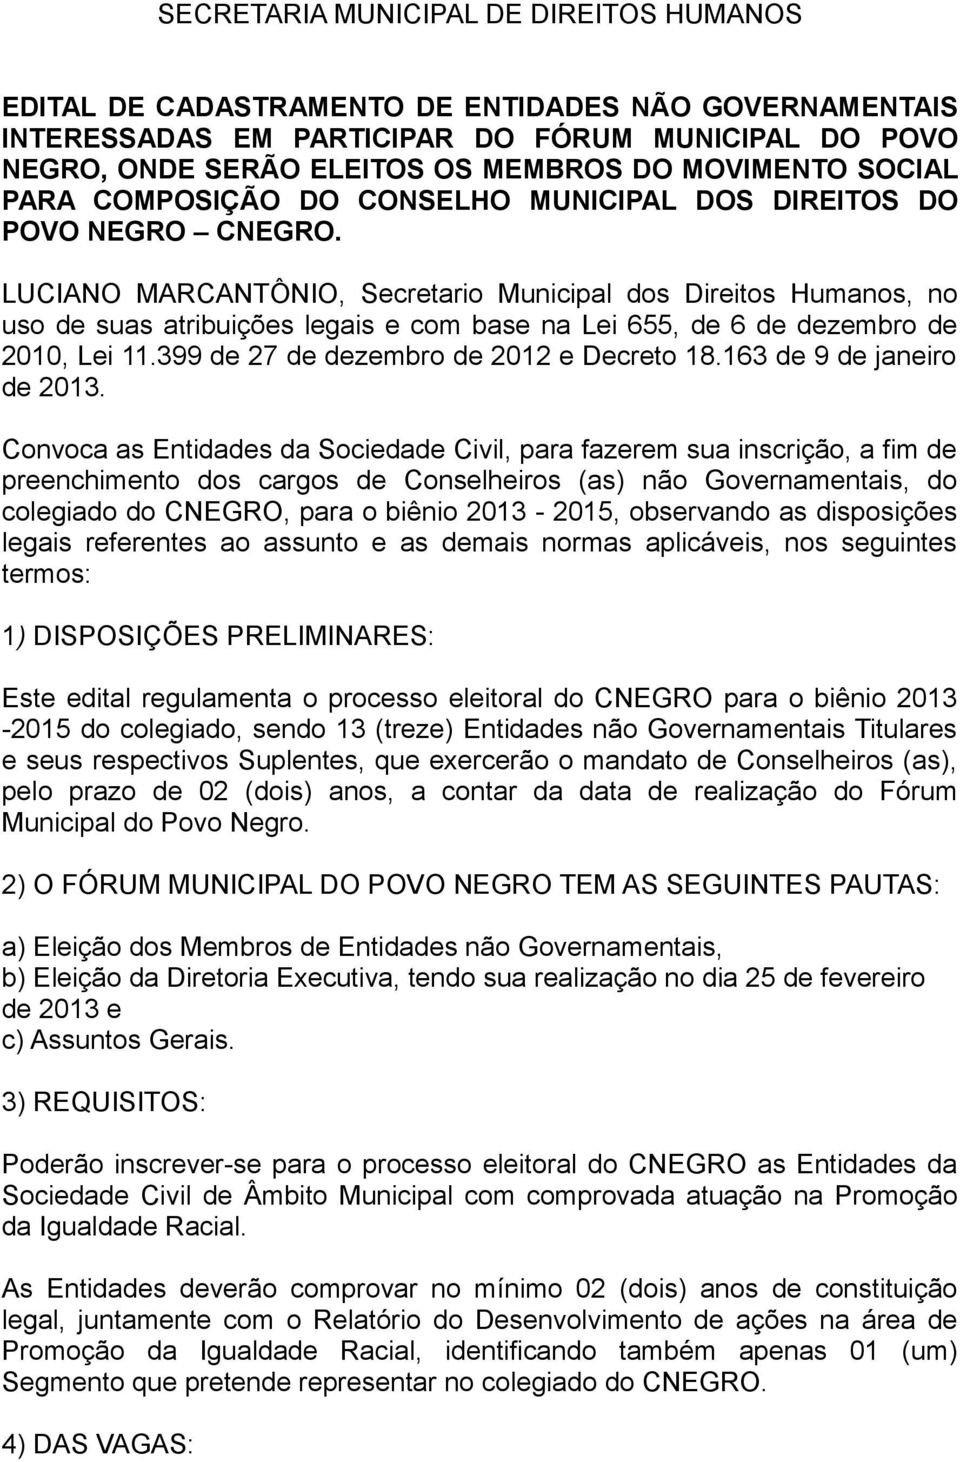 LUCIANO MARCANTÔNIO, Secretario Municipal dos Direitos Humanos, no uso de suas atribuições legais e com base na Lei 655, de 6 de dezembro de 2010, Lei 11.399 de 27 de dezembro de 2012 e Decreto 18.